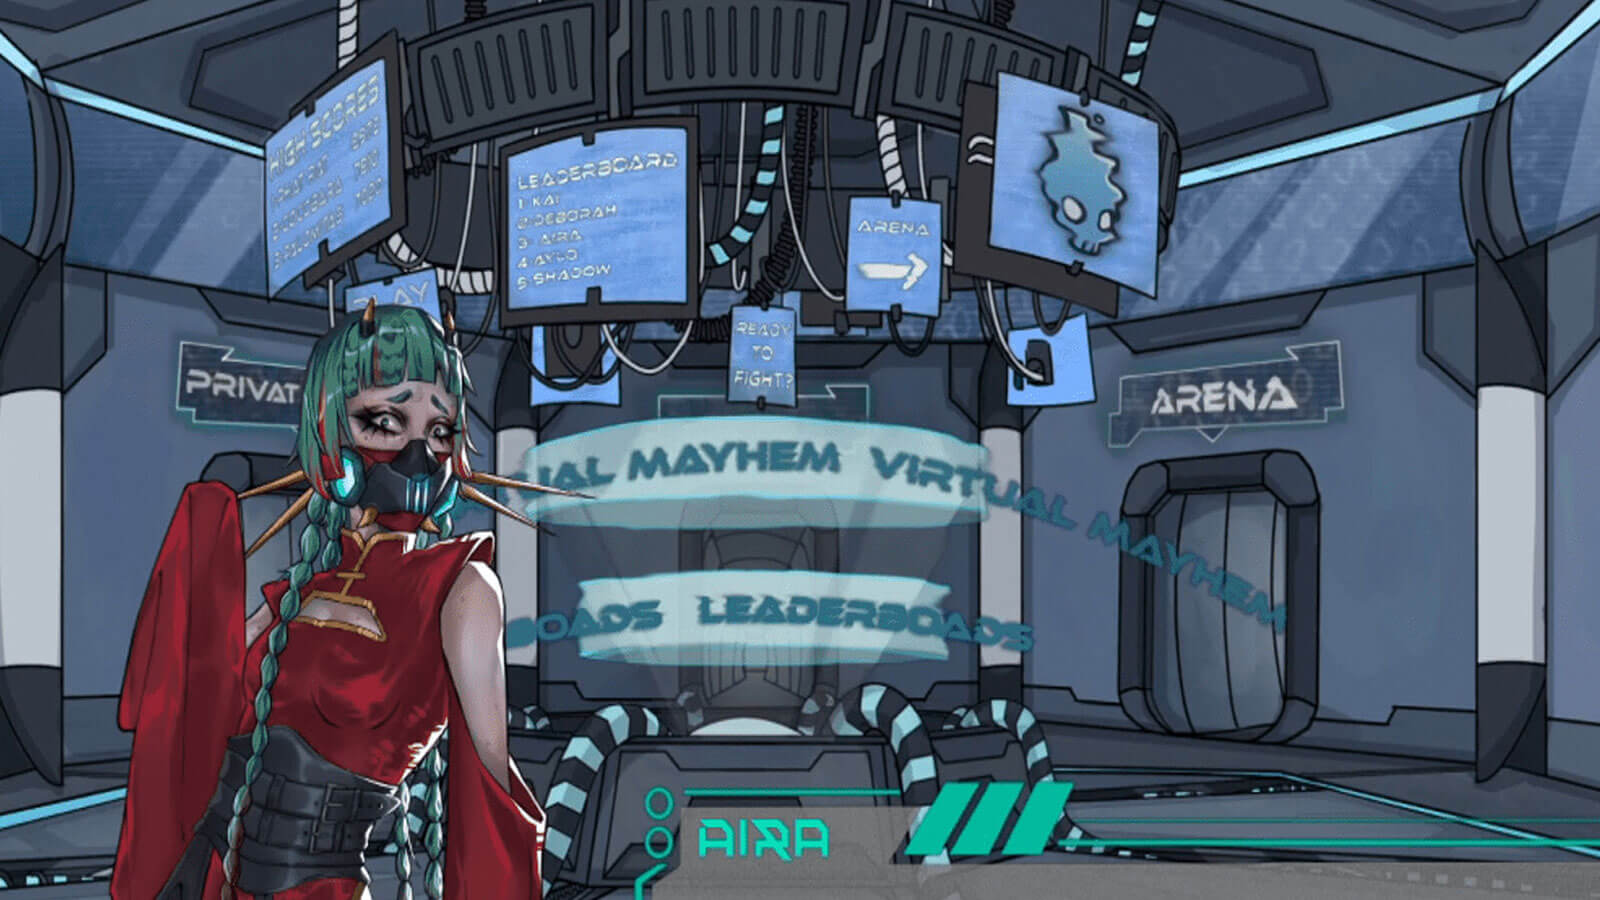 Aira de Virtual Mayhem está hablando, ella está a salvo cerca del área de entrenamiento.